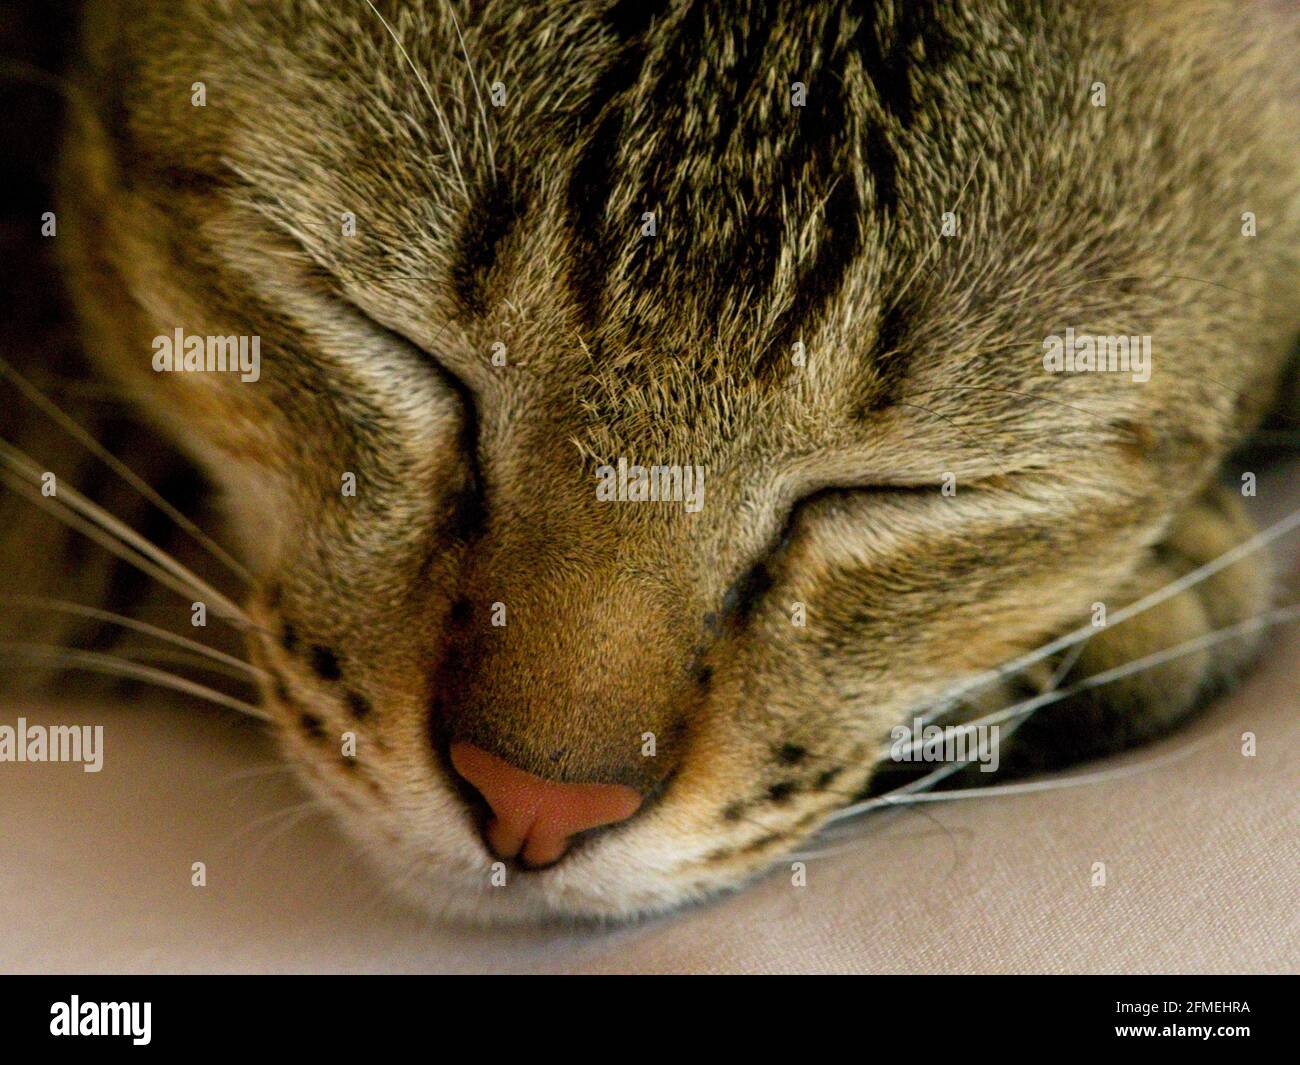 Gros plan portrait d'un chat mignon endormi avec des whiskers Bali, Indonésie. Banque D'Images